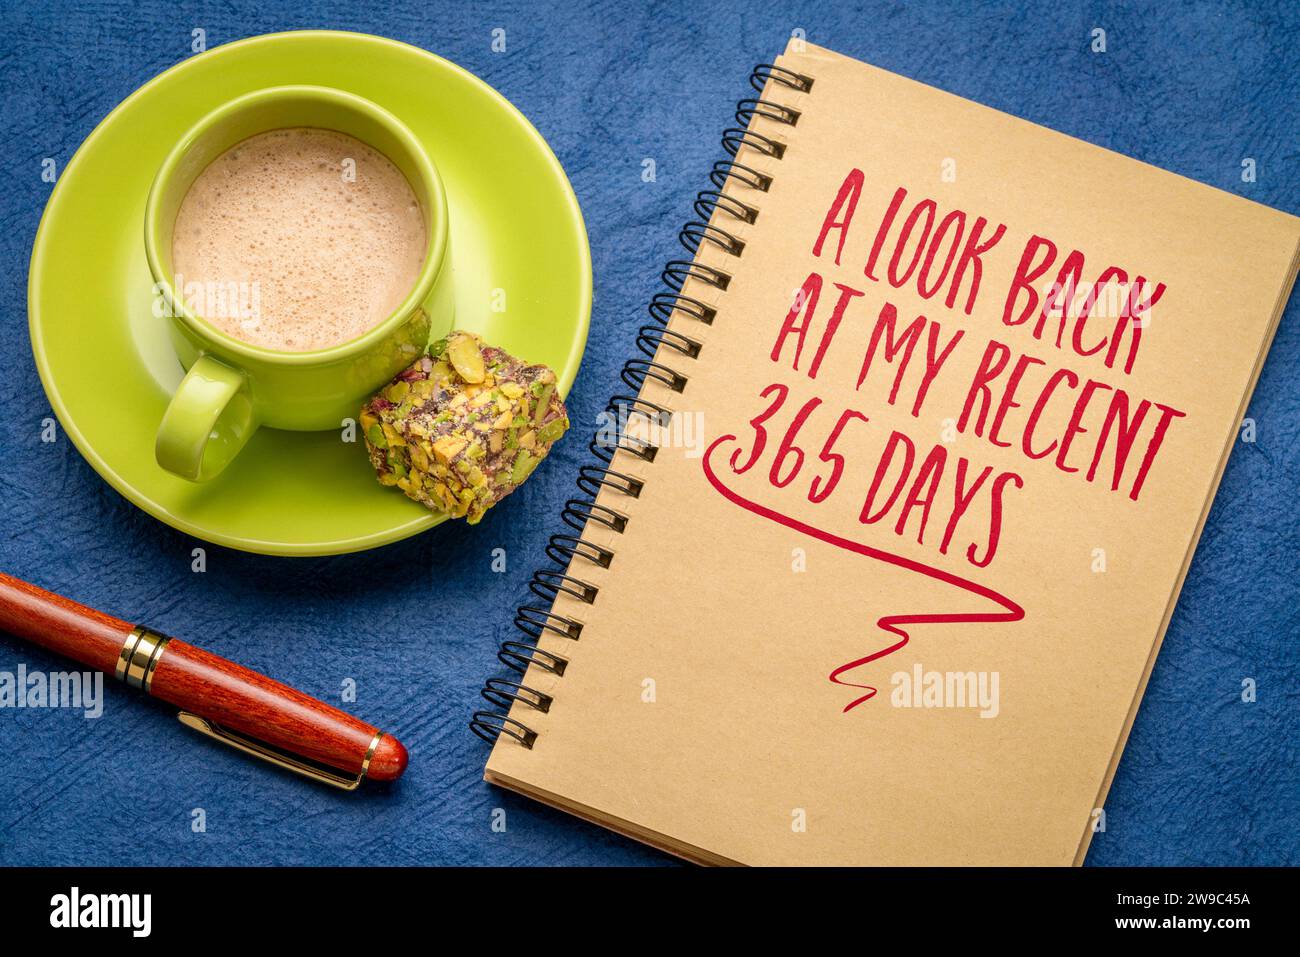 Ein Blick zurück auf meine letzten 365 Tage - eine Notiz in einem Spiralnotizbuch mit Kaffee, Rückblick zum Jahresende Stockfoto